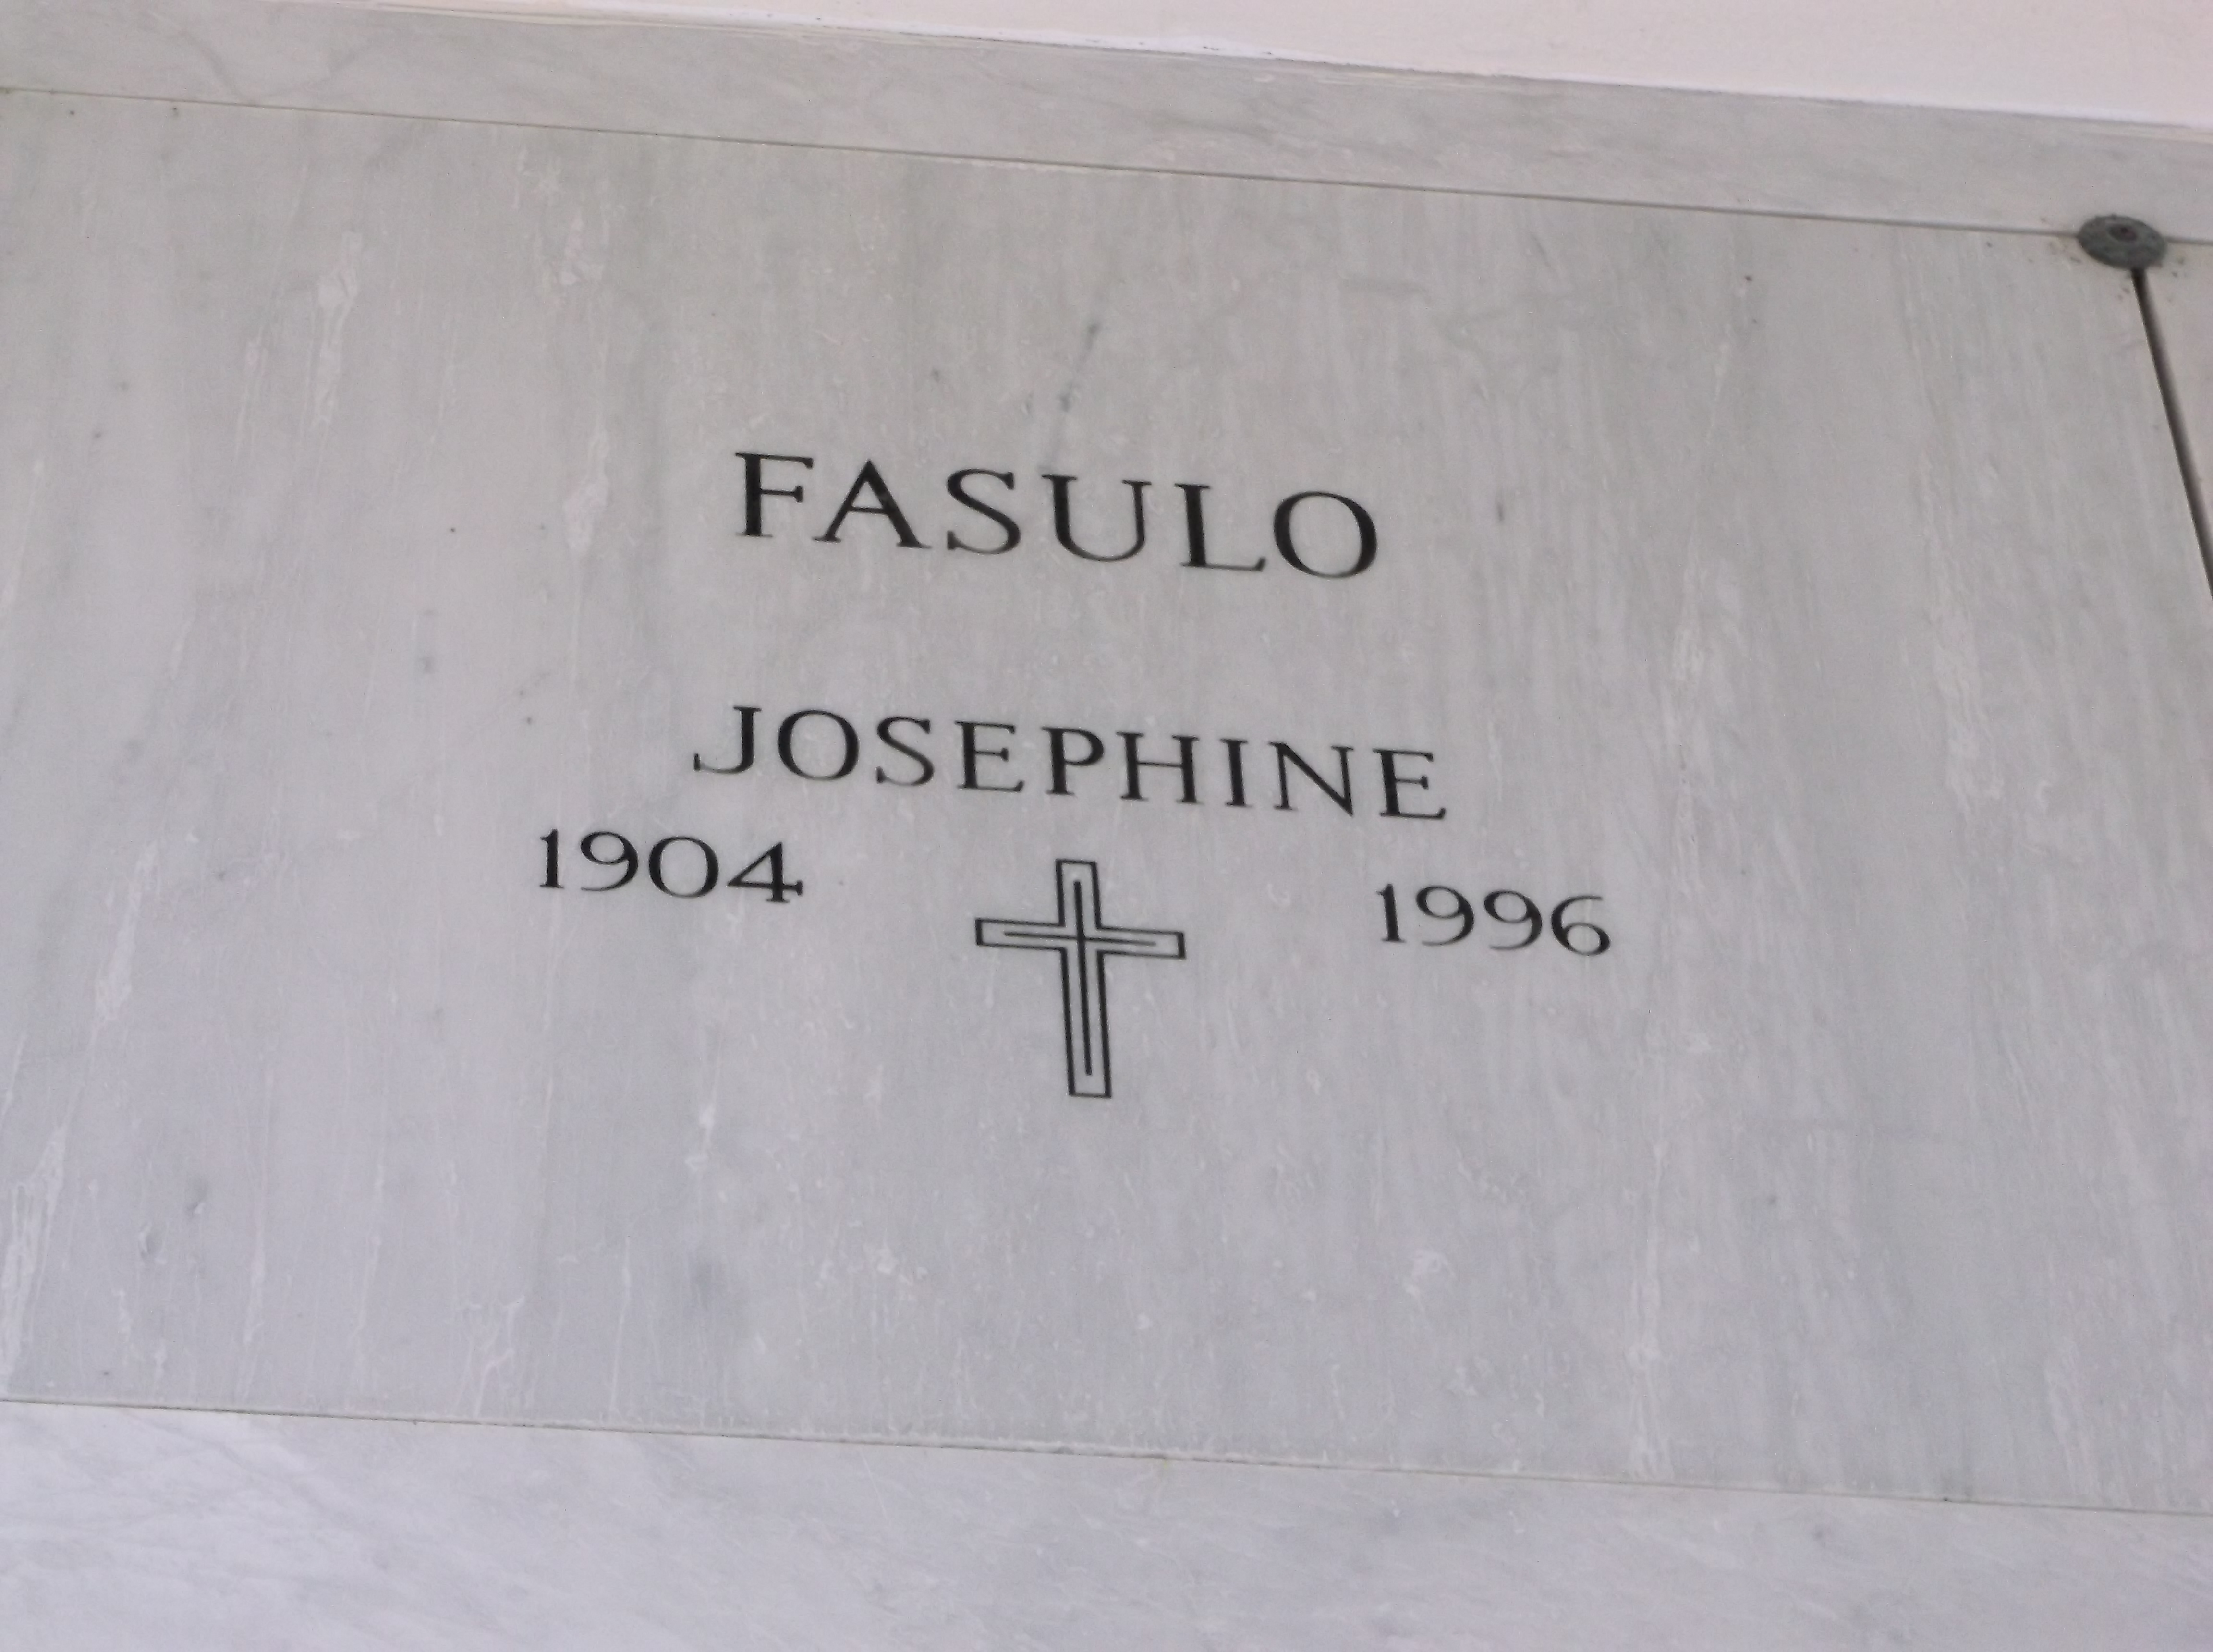 Josephine Fasulo